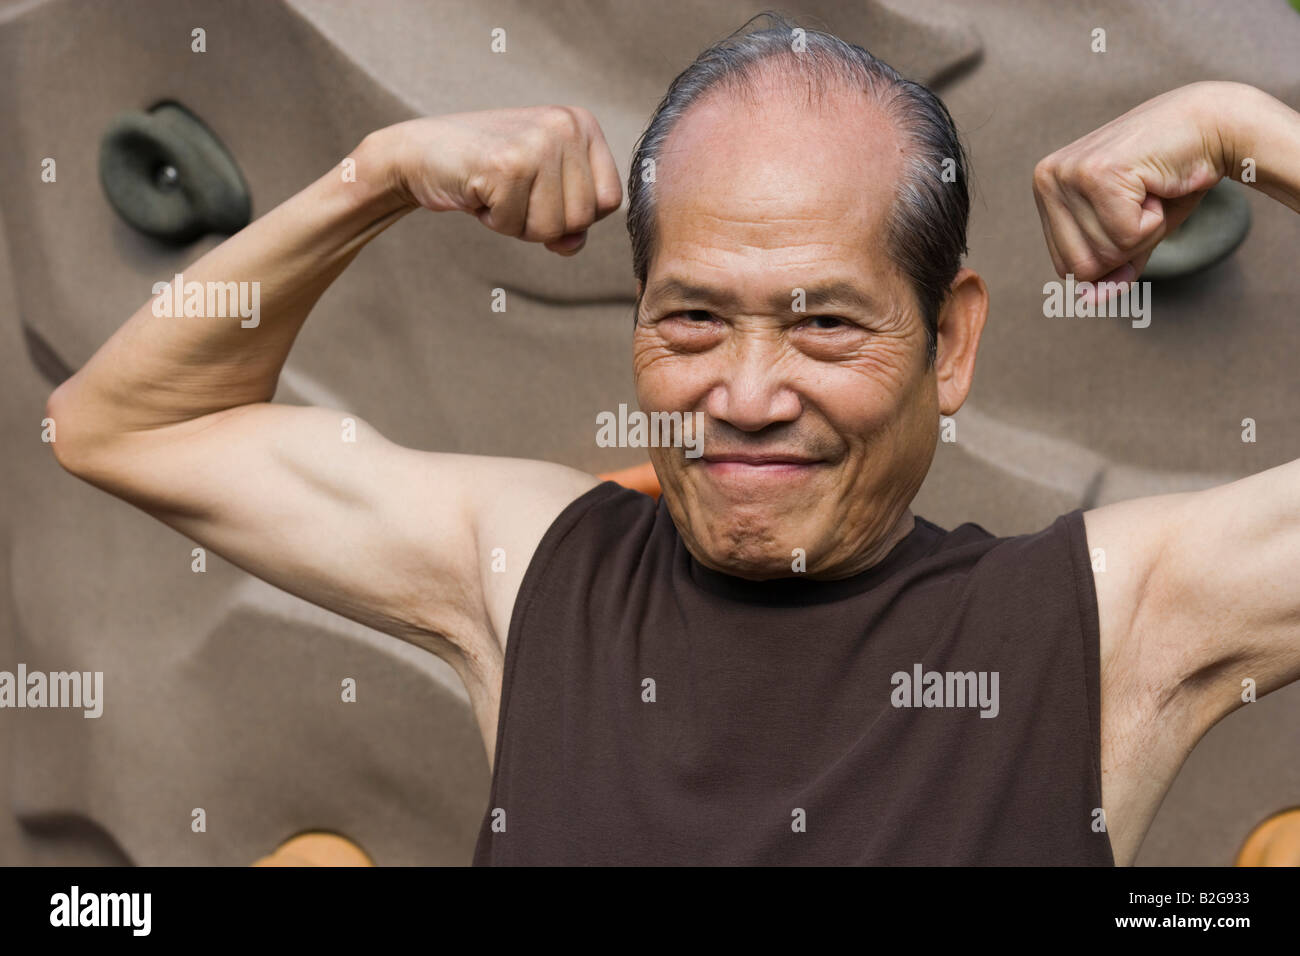 Portrait of a senior man flexing muscles Banque D'Images